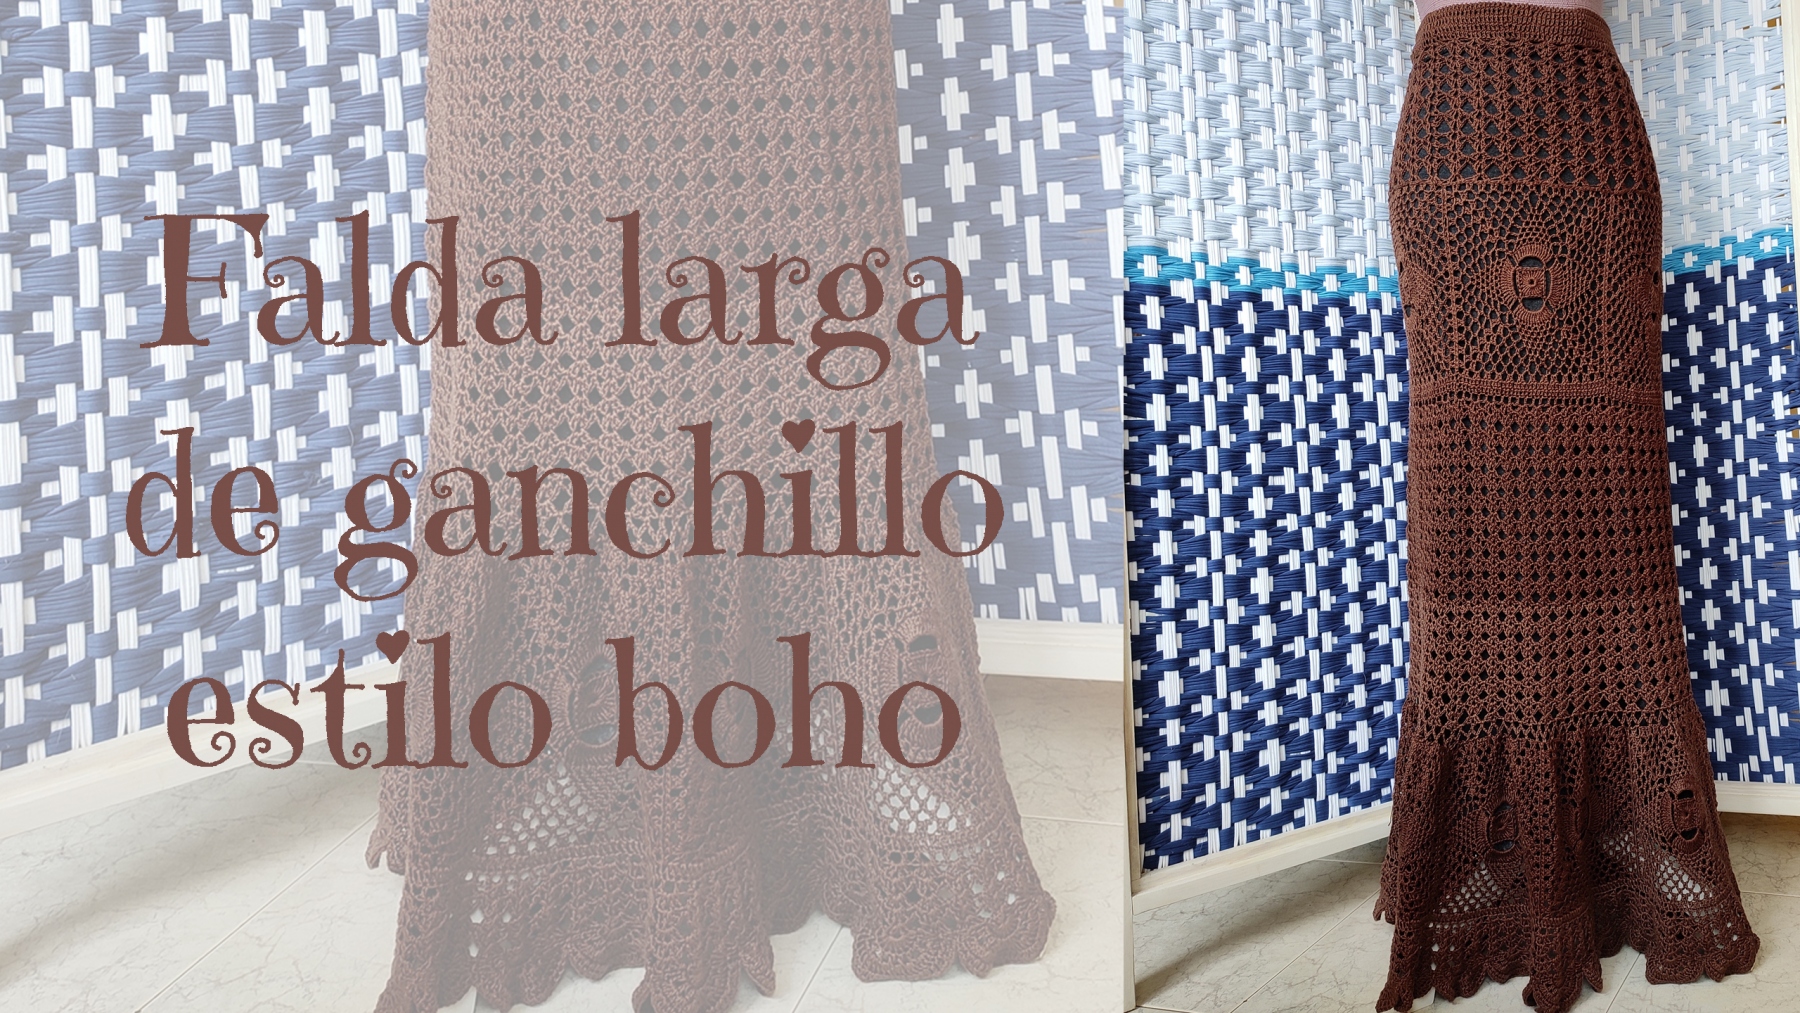 Falda de Ganchillo estilo Boho * Saekita Ganchillo